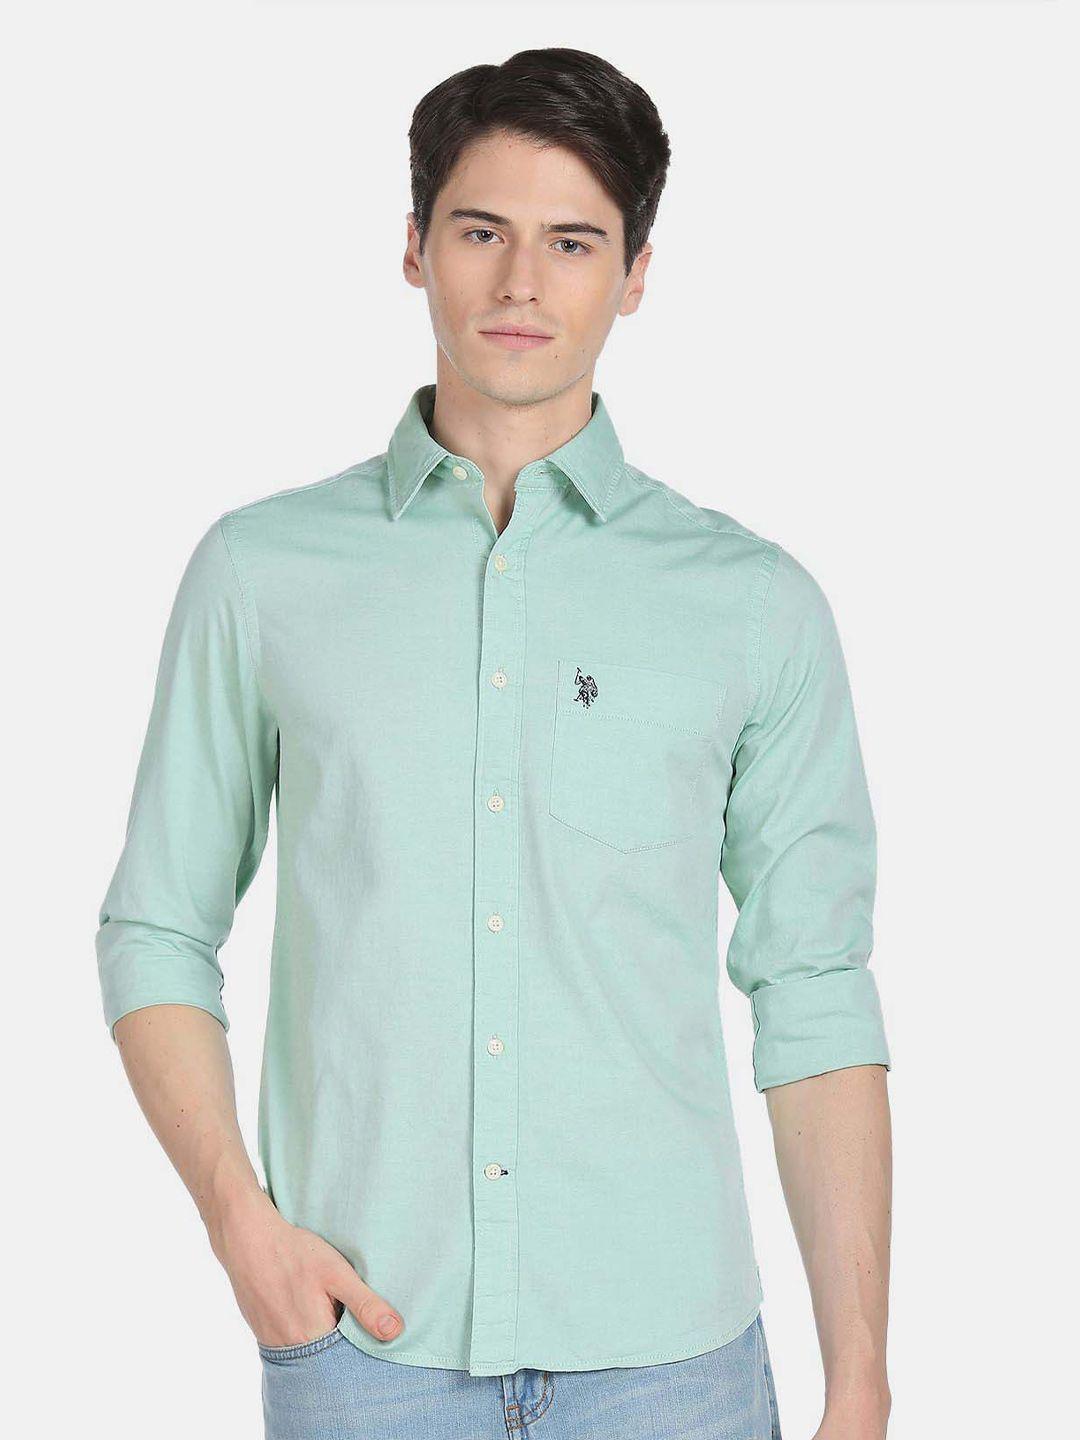 u.s. polo assn. men casual cotton shirt